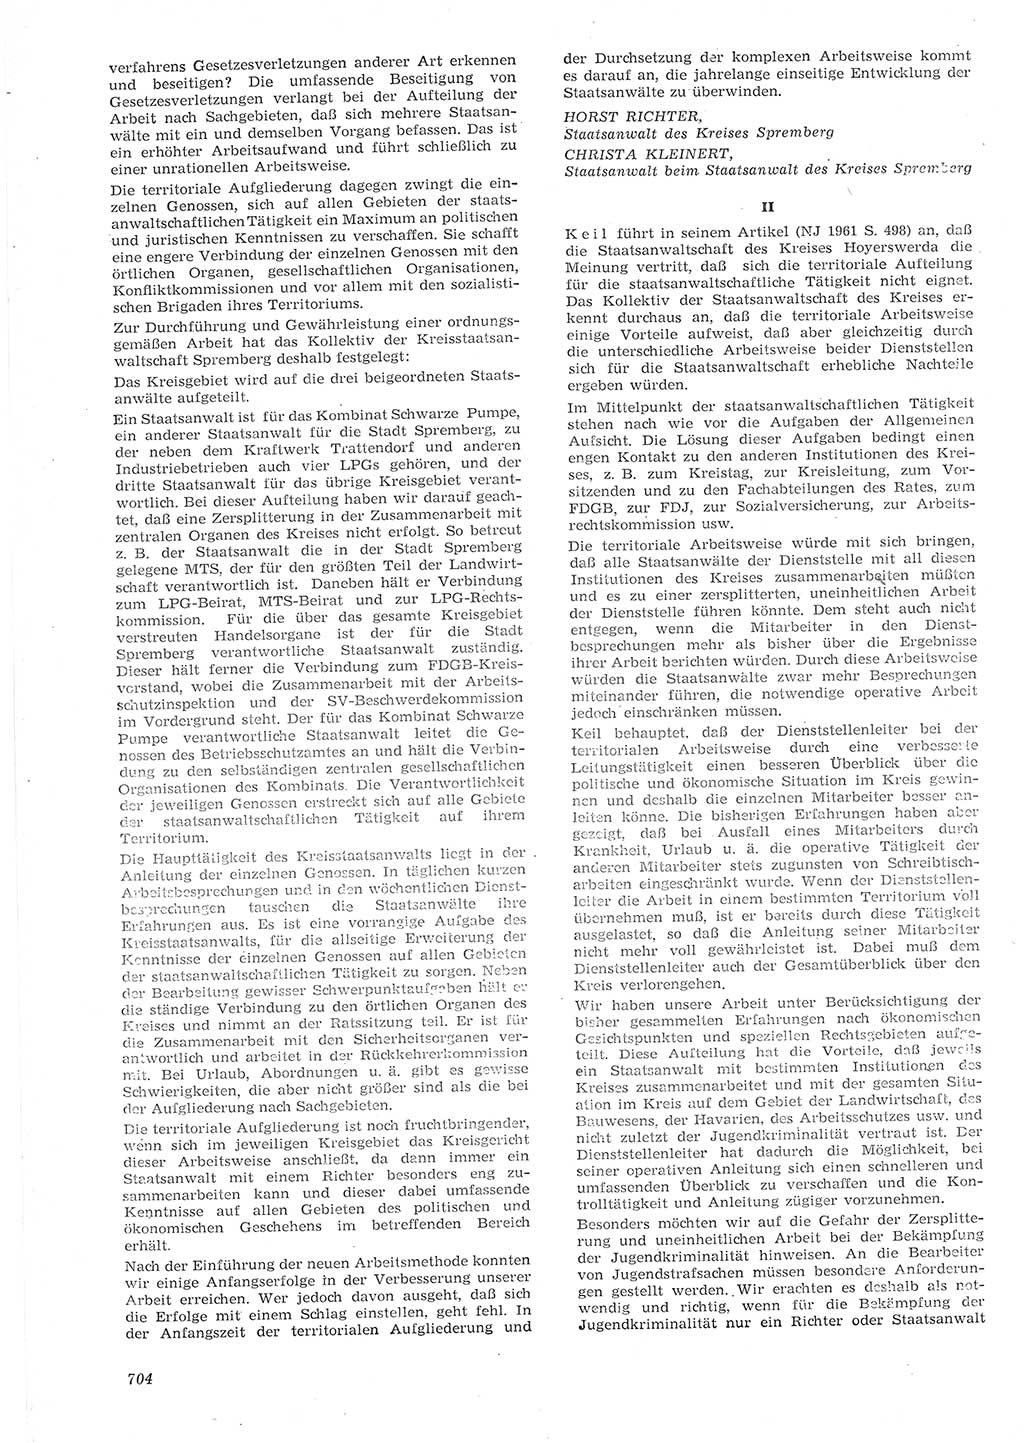 Neue Justiz (NJ), Zeitschrift für Recht und Rechtswissenschaft [Deutsche Demokratische Republik (DDR)], 15. Jahrgang 1961, Seite 704 (NJ DDR 1961, S. 704)